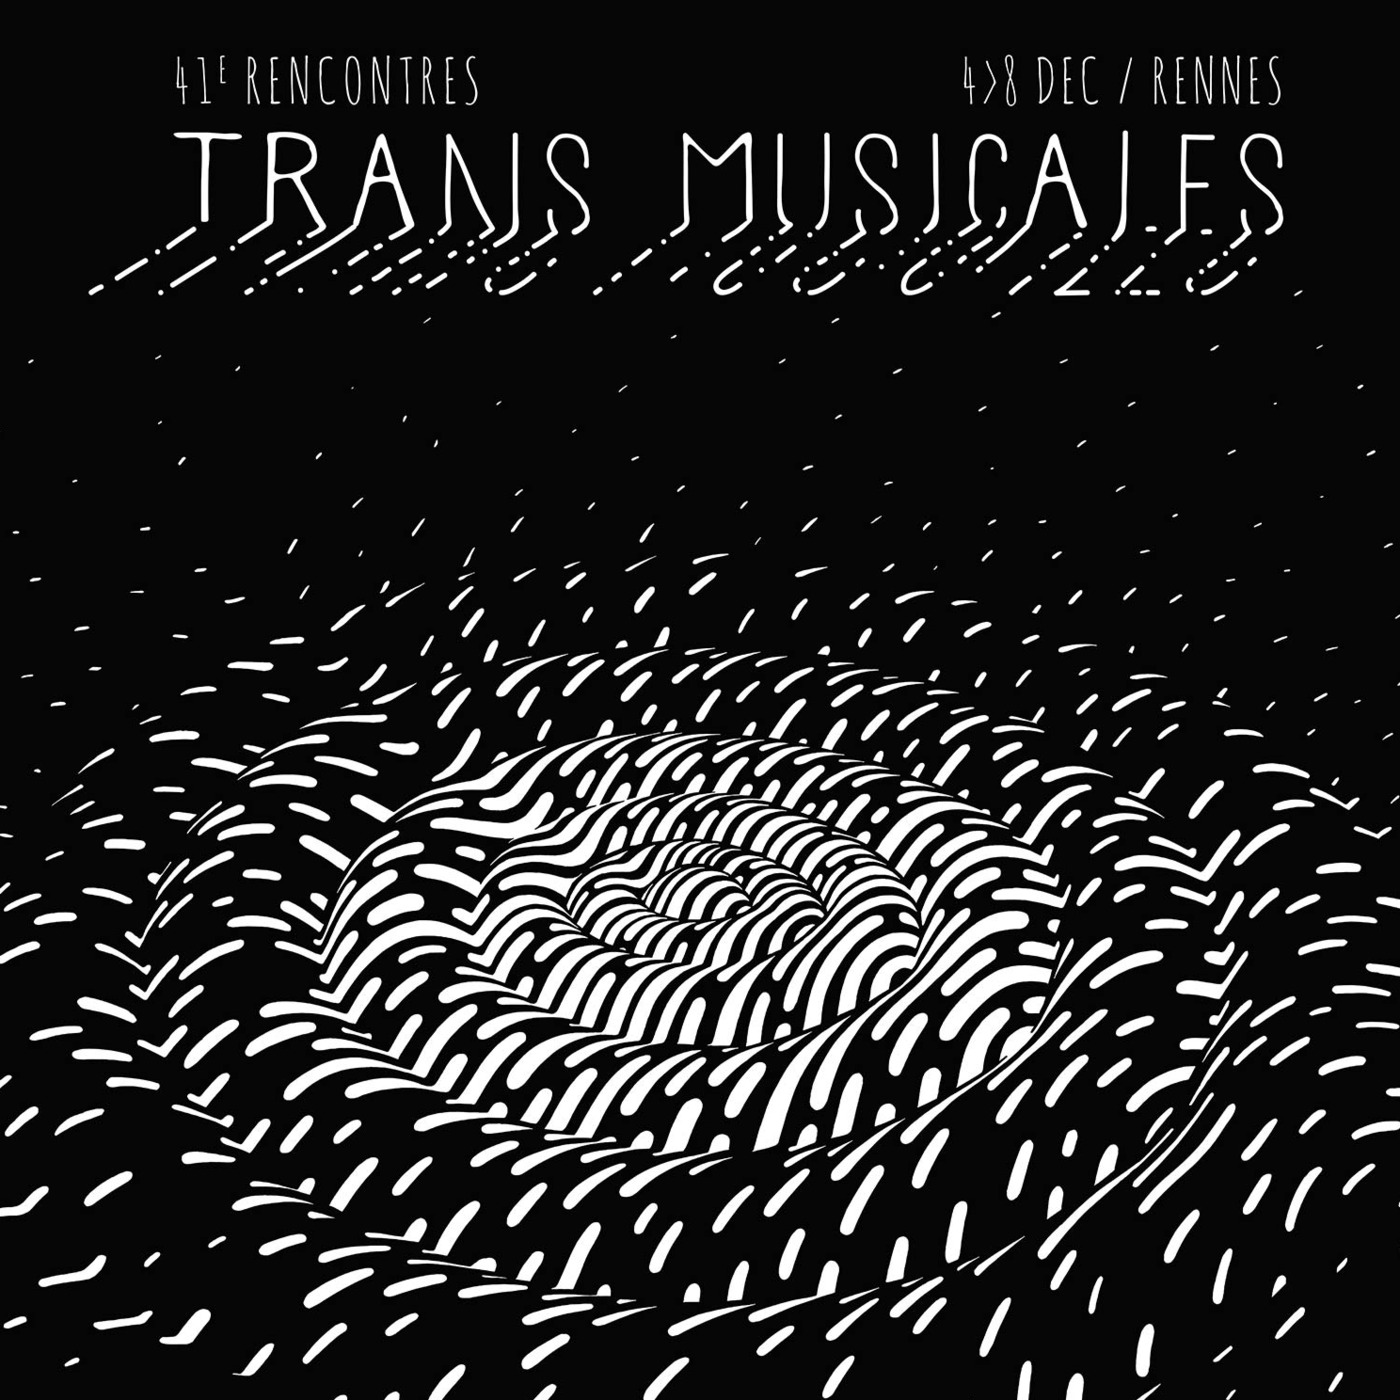 Trans Musicales 2019 : Vers des folklores imaginaires (2/2)